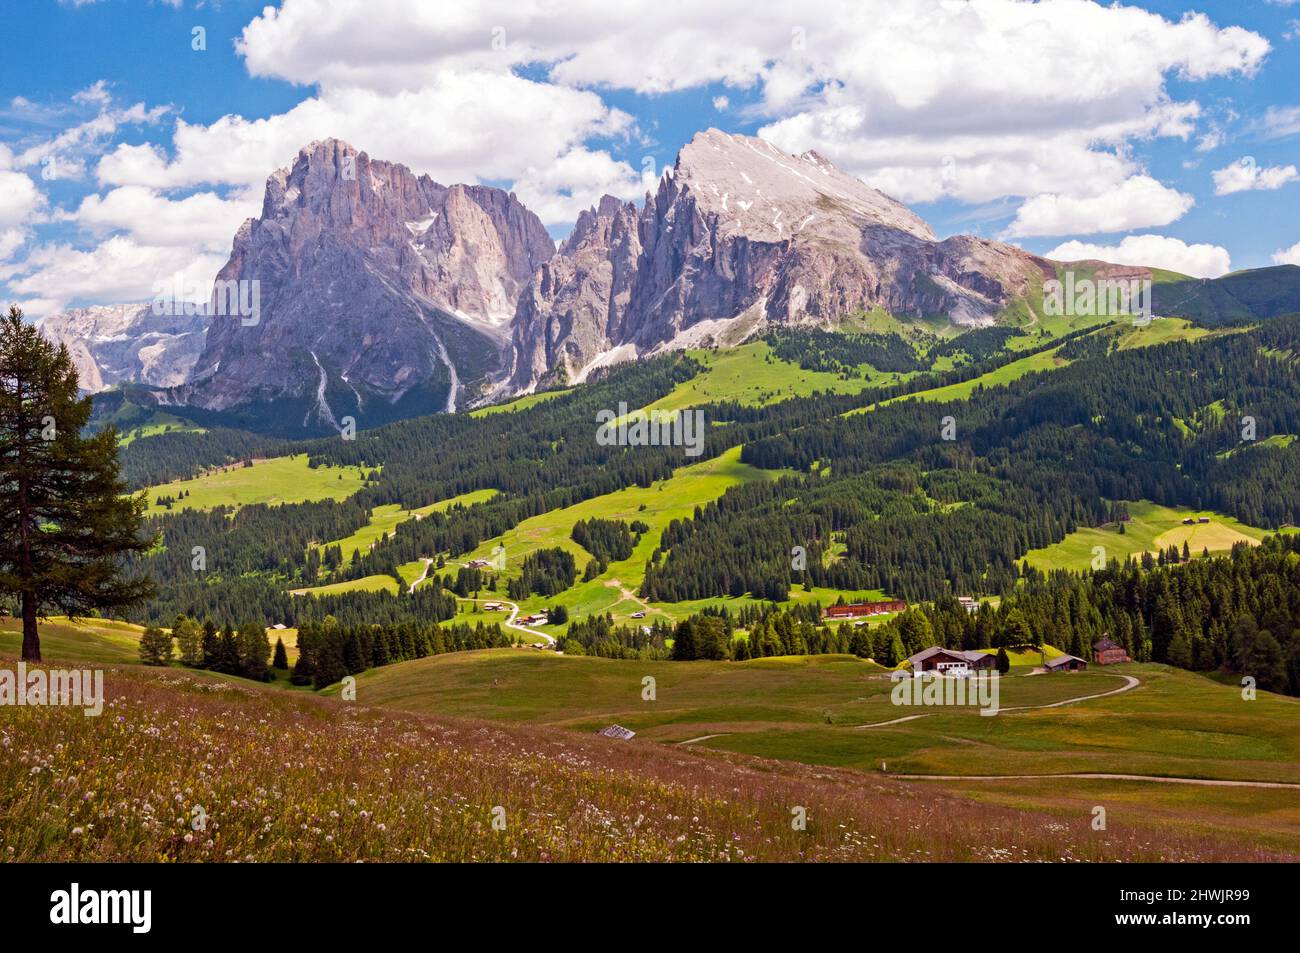 Sasso Lungo and Sasso Piatto, Alpe di Siusi, Alto Adige, Italy Stock Photo